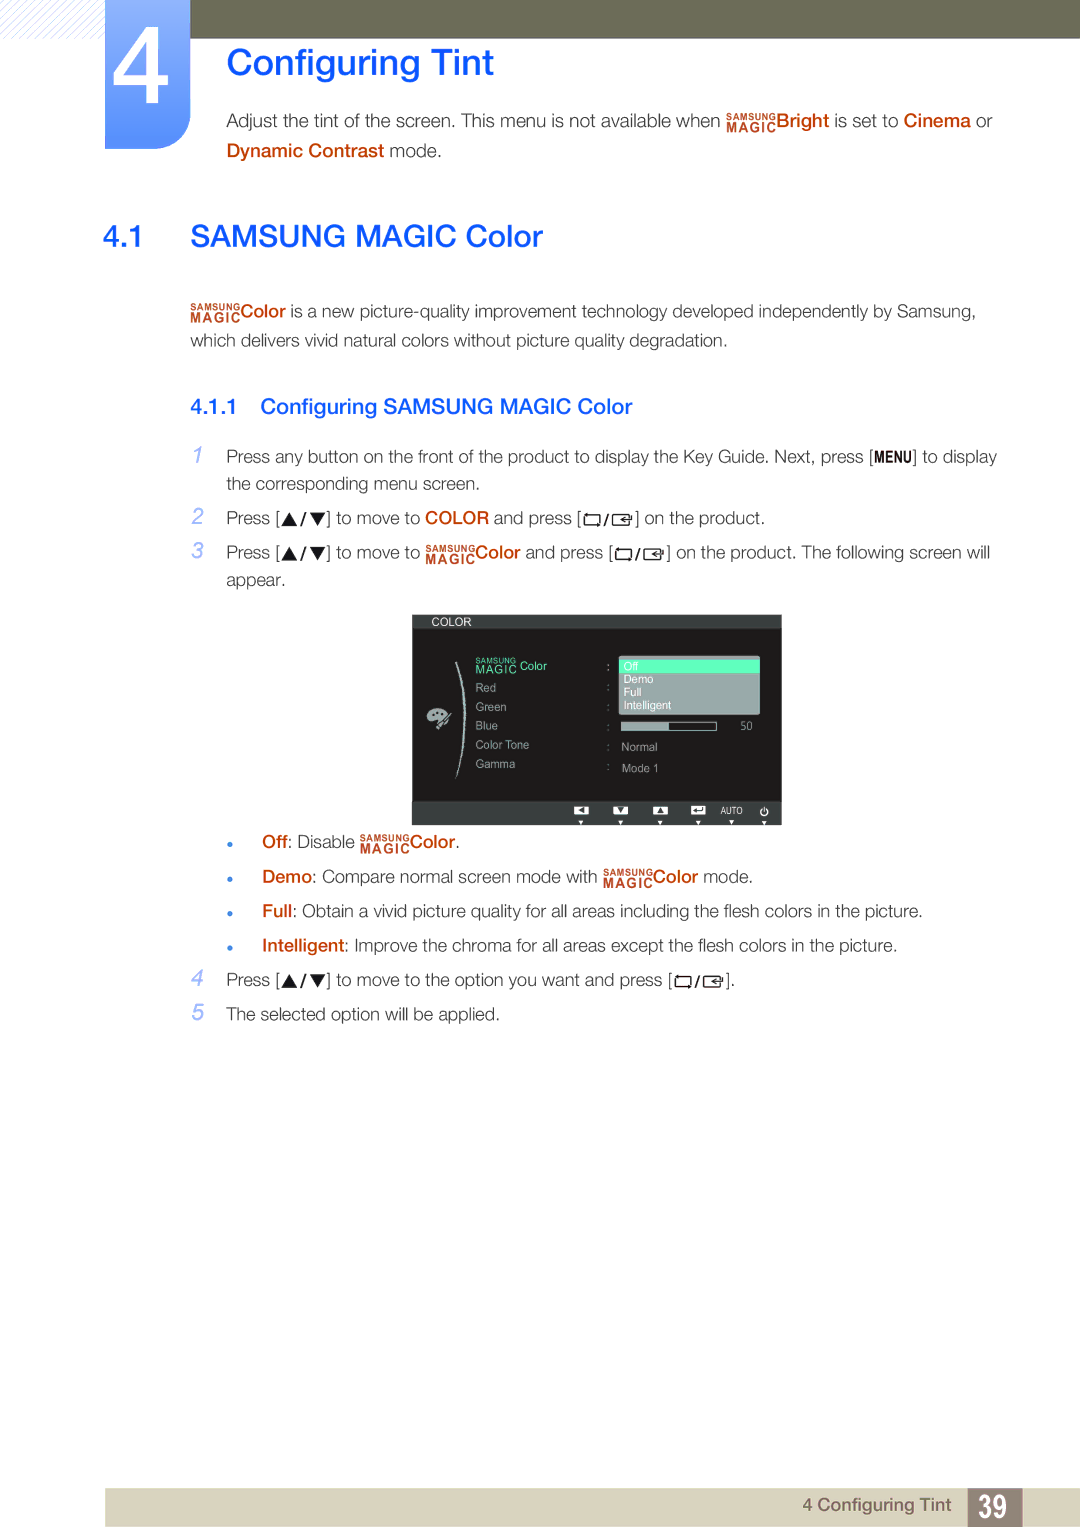 Samsung LS24B150BL/EN, LS19B150BSMXV, LS24B150BL/CI manual Configuring Tint, Configuring Samsung Magic Color 